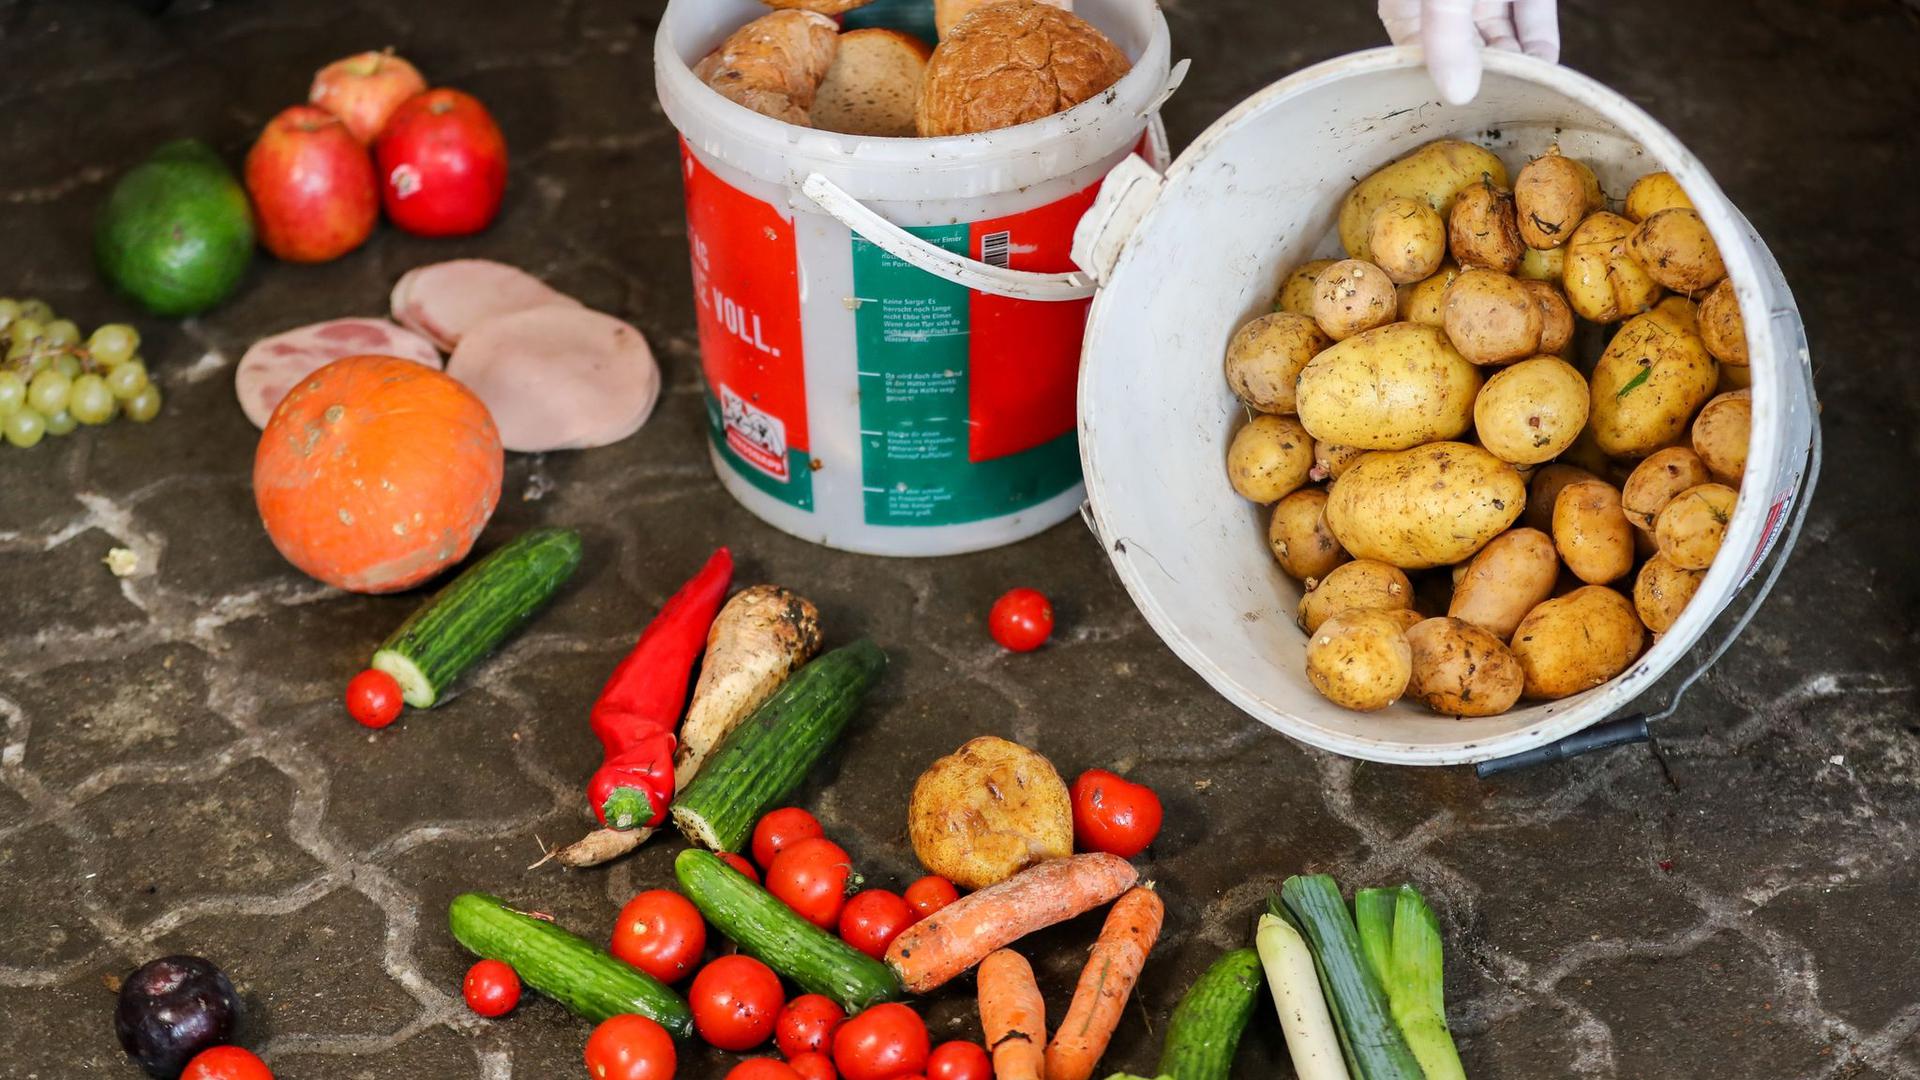 Der Handel sortiert Berechnungen zufolge jährlich rund 500.000 Tonnen Lebensmittel als Abfall aus.